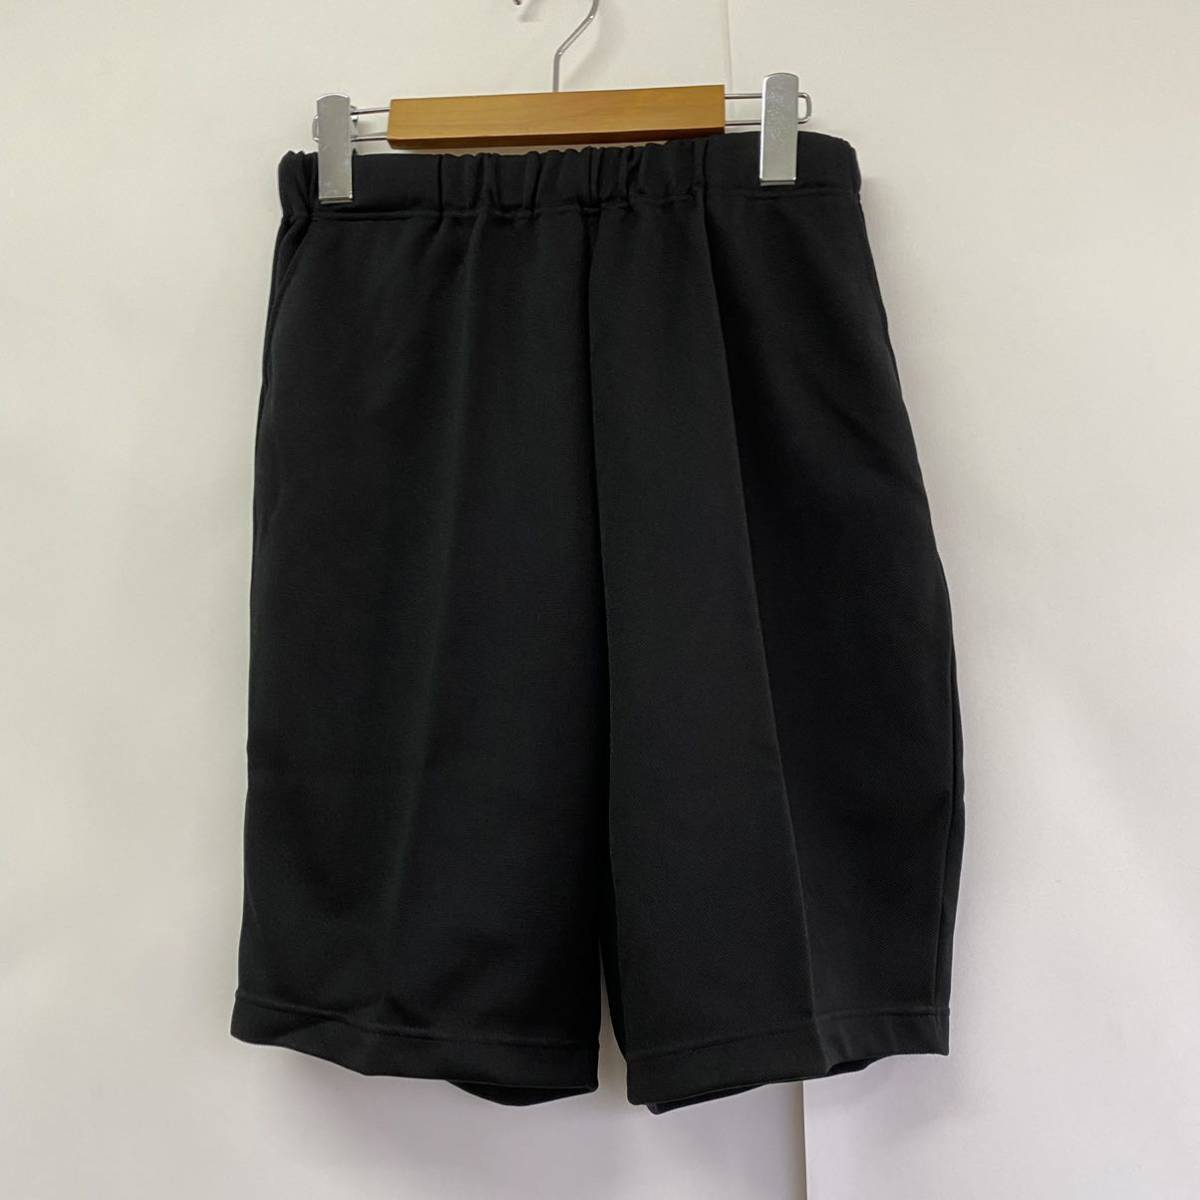 Goldwin брюки половина брюк широкие брюки черные с неиспользованными битками спортивная одежда носить басспановый клуб Clear Black Jersey S790aa xo